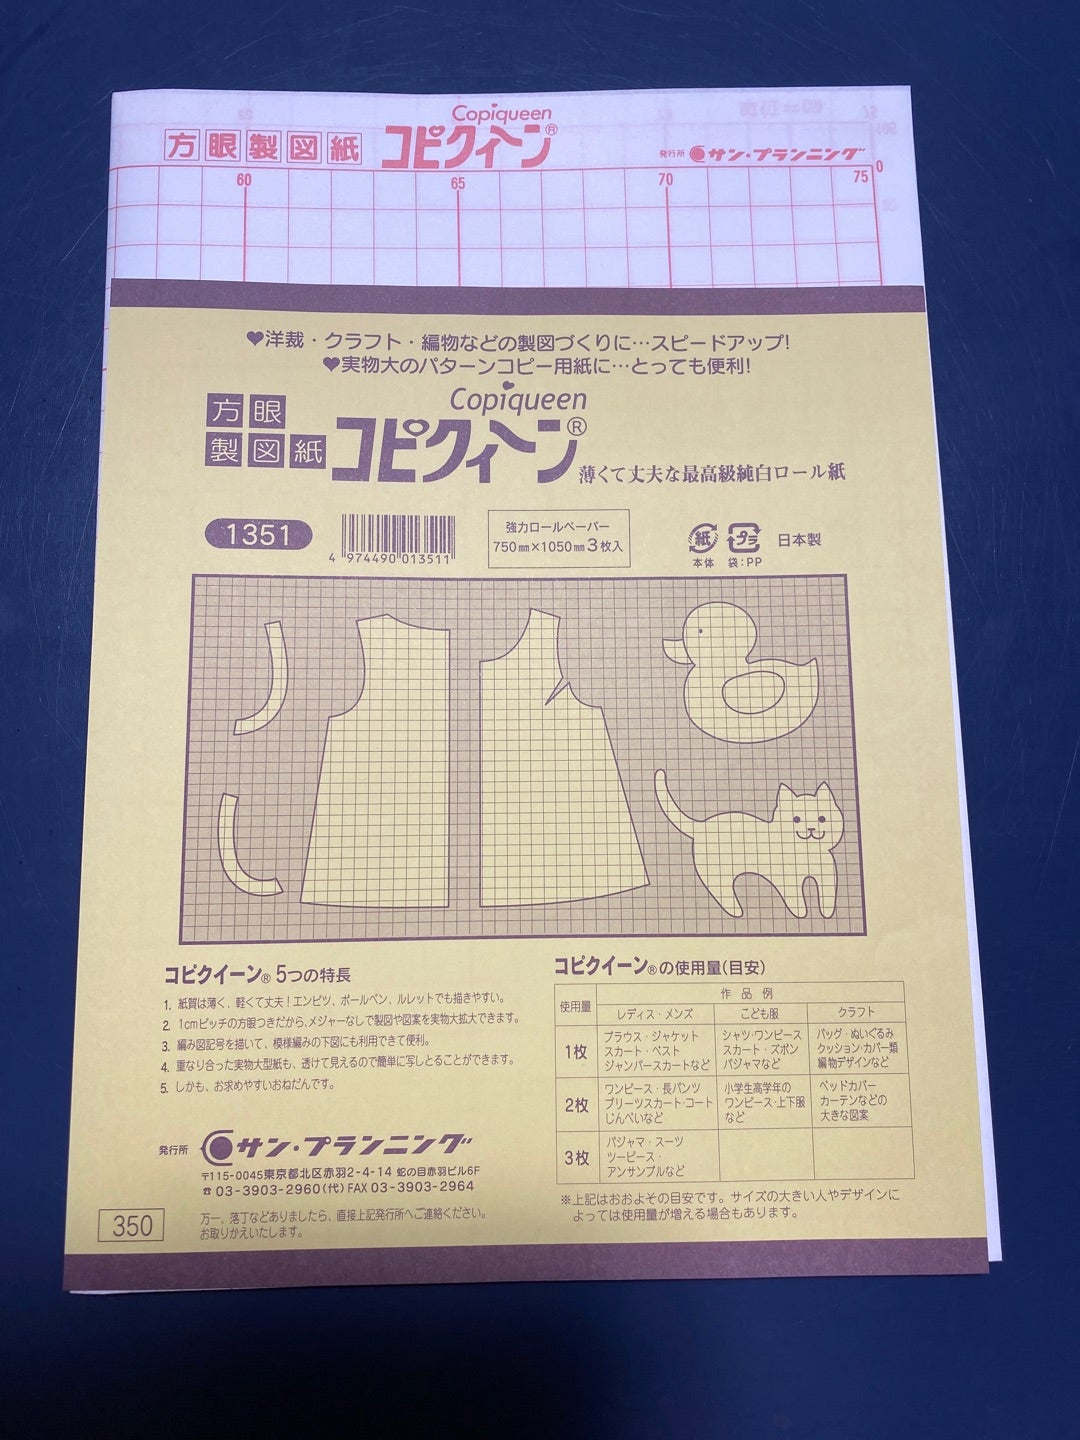 ハトロン紙の裏表 | didit sewing ～横浜・日吉の初心者向け洋裁教室